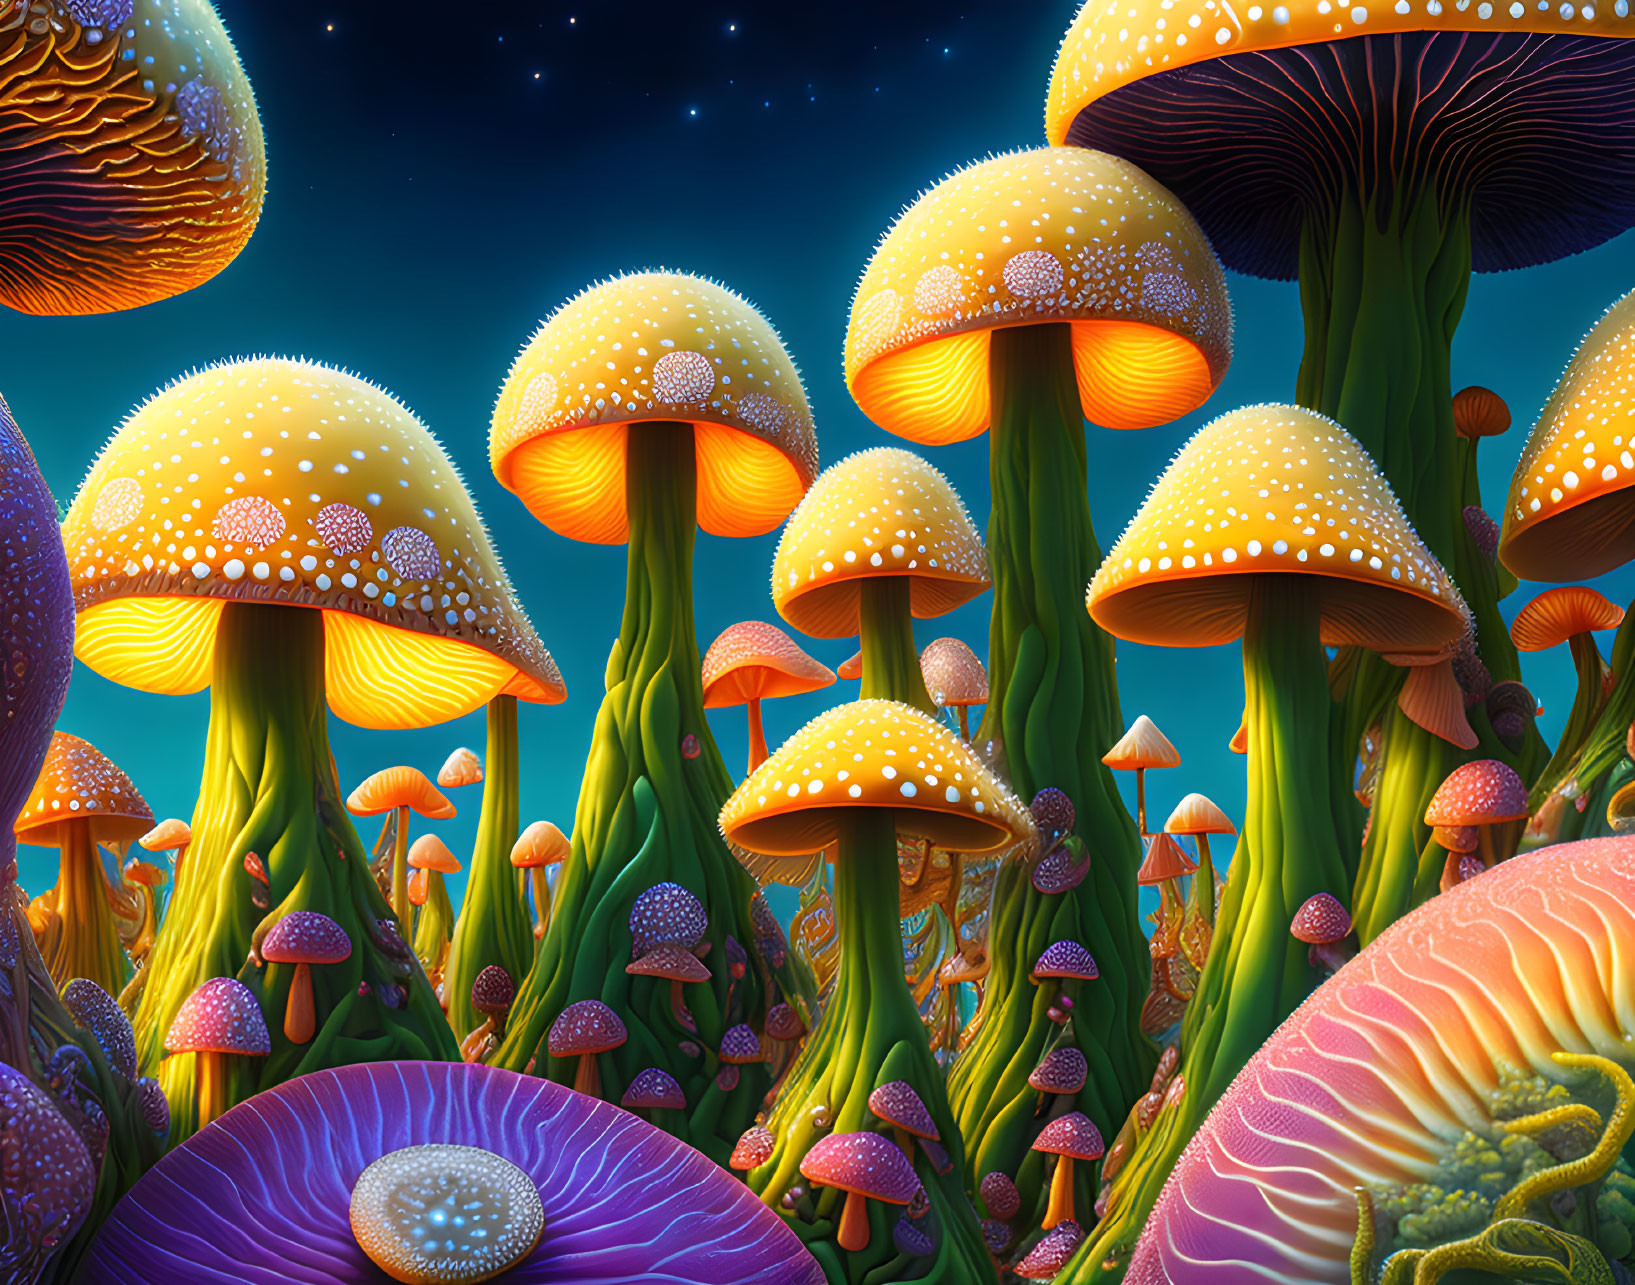 Fantasy illustration: Oversized luminescent mushrooms under starry sky